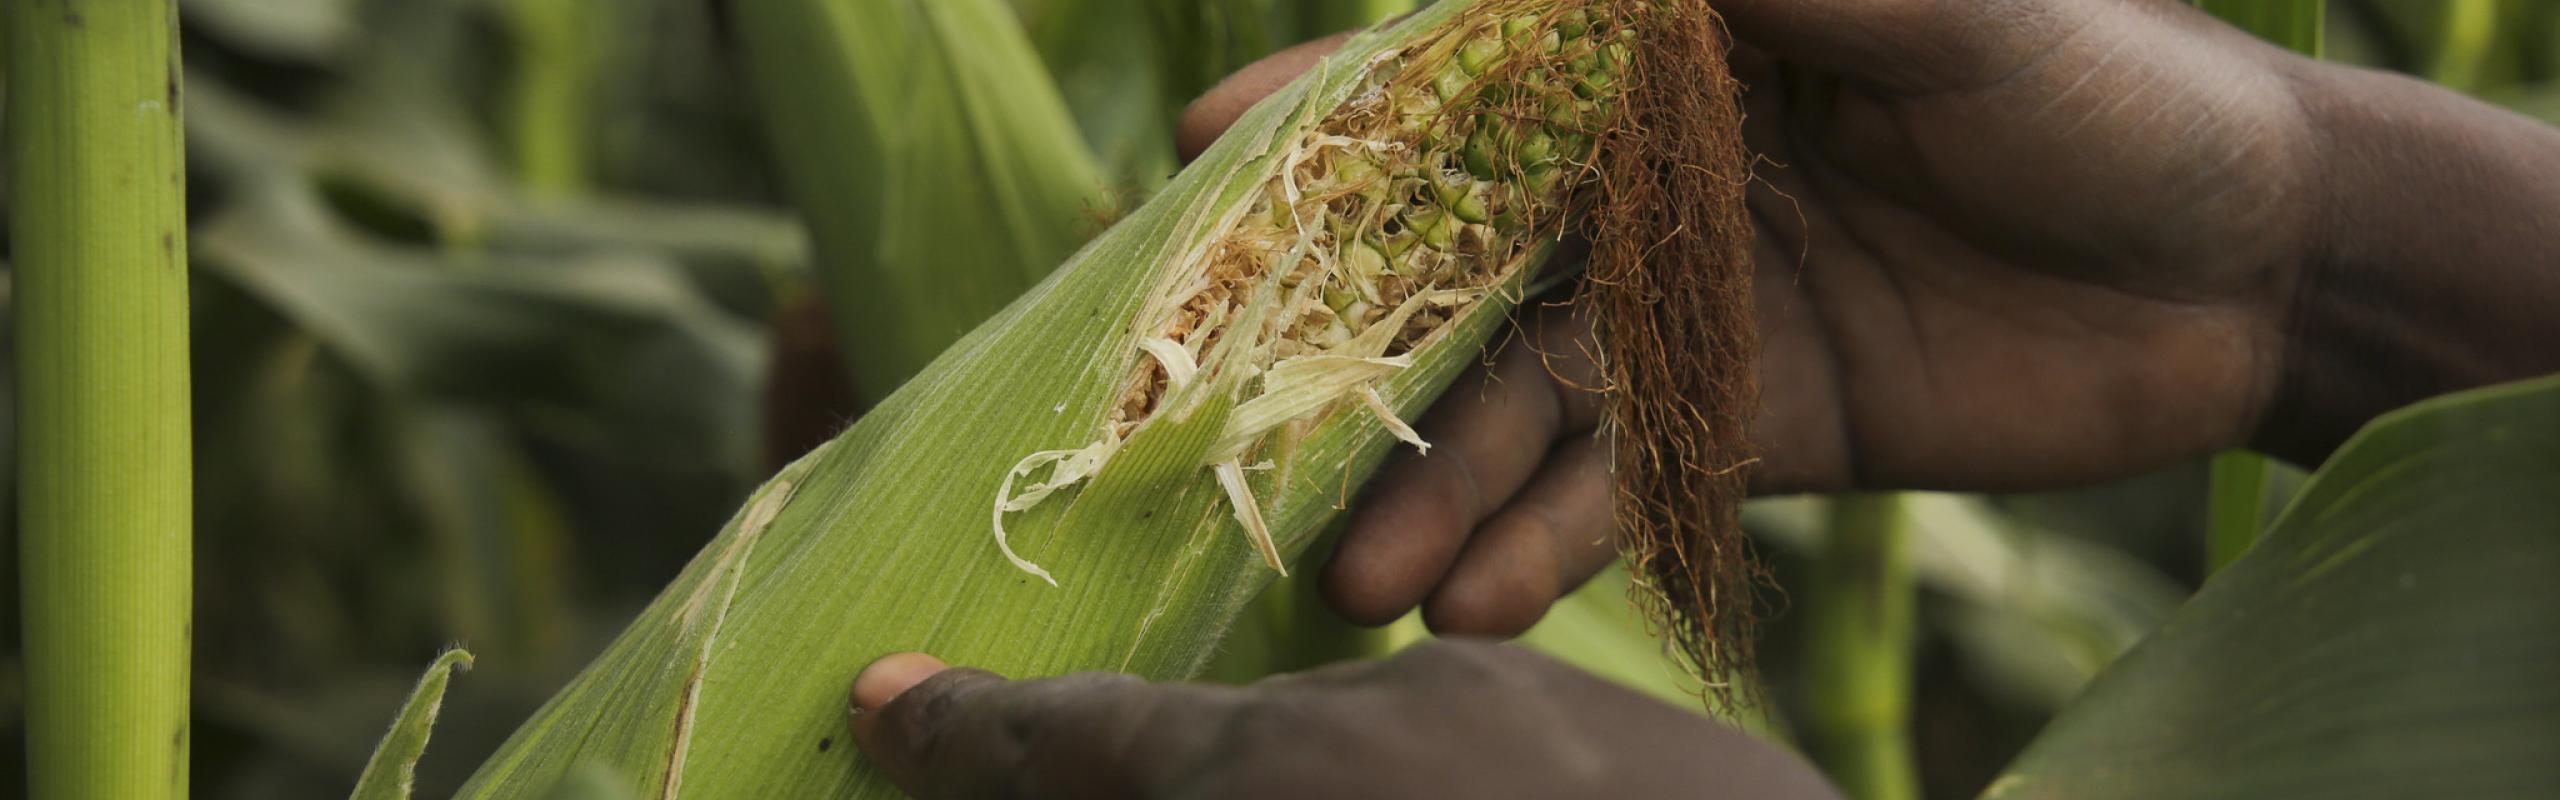 Malawian farmer's hands holding ear of maize. 